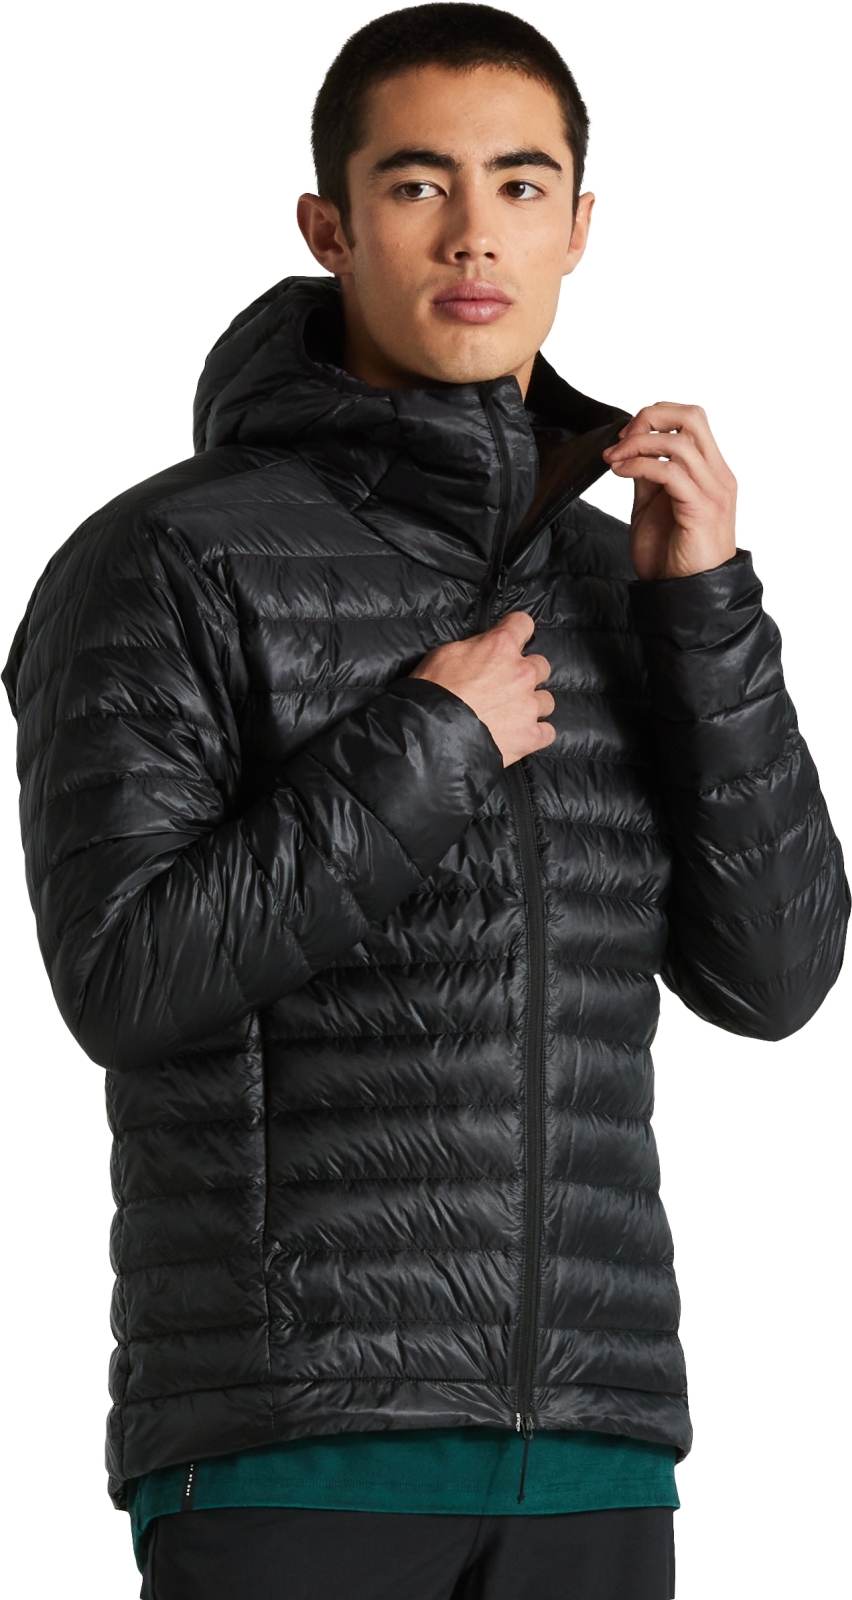 E-shop Specialized Men's Packable Down Jacket - black M